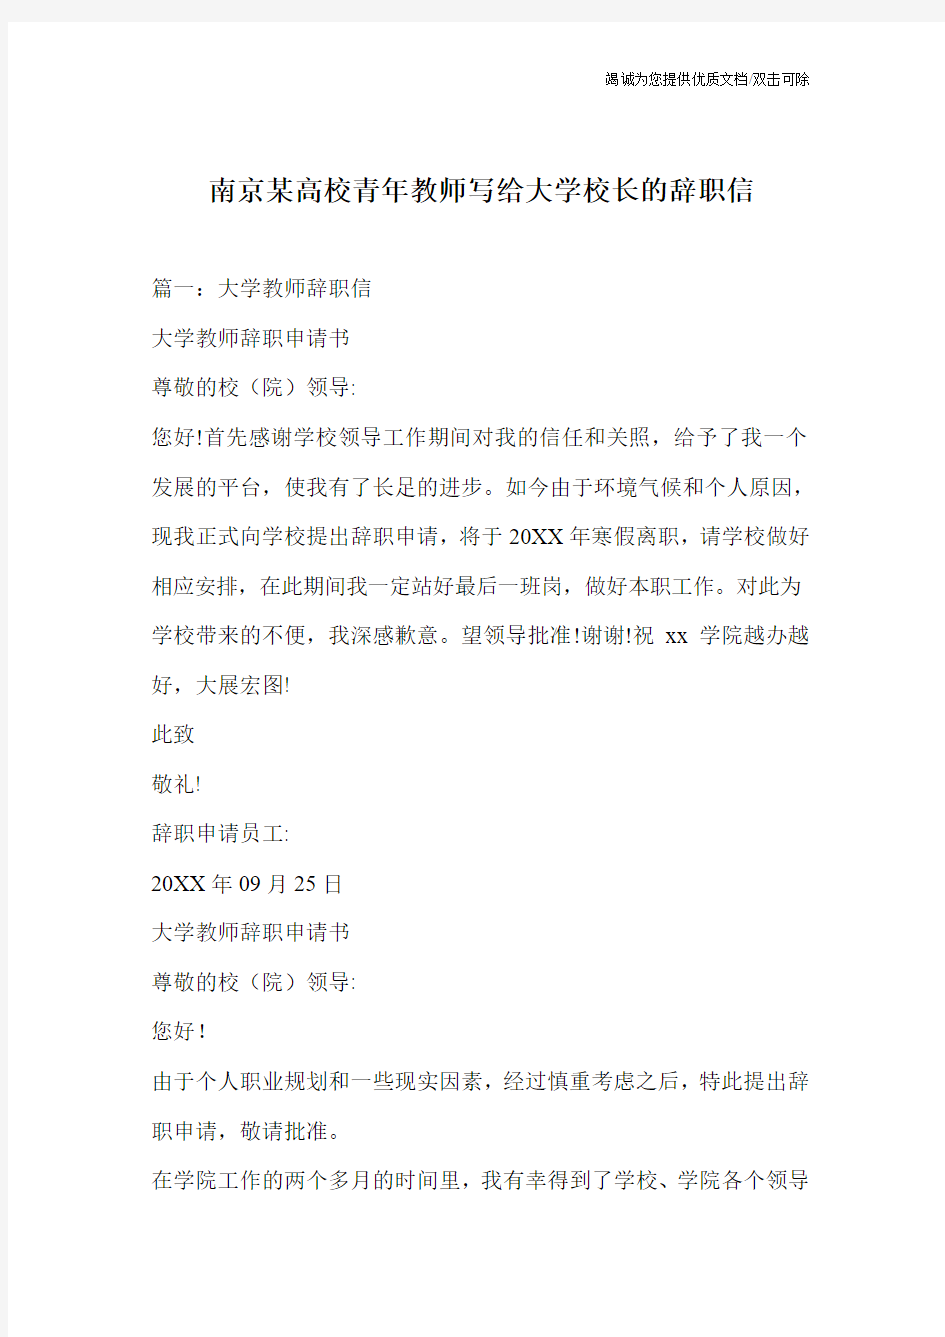 南京某高校青年教师写给大学校长的辞职信